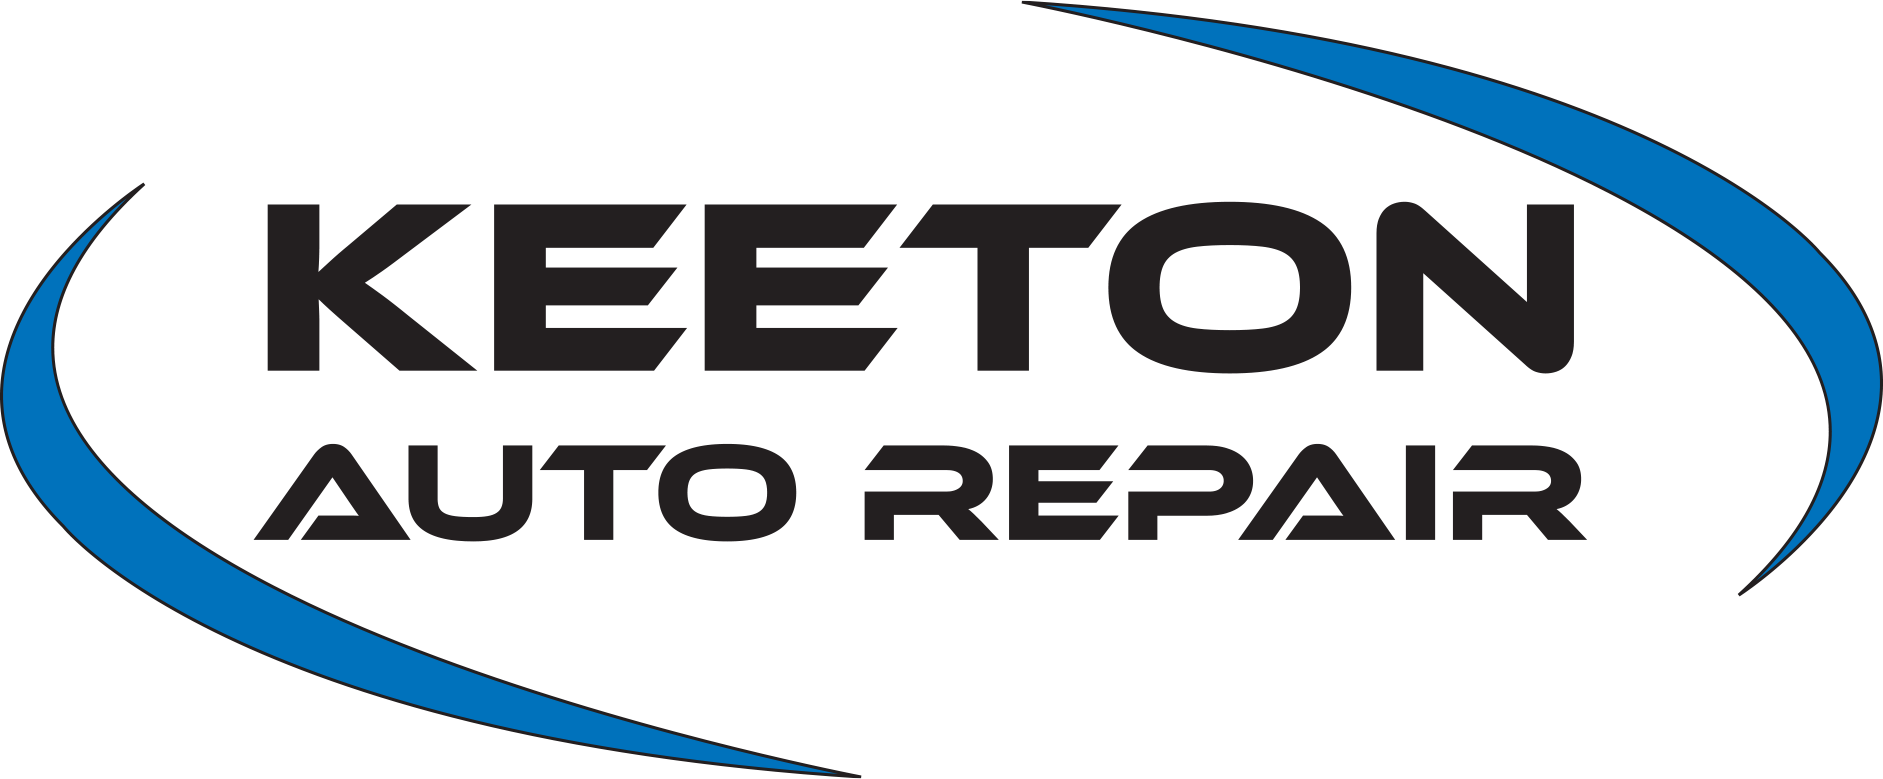 Automobile Repair Logo - Overland Park Auto Repair | Keeton Auto Repair